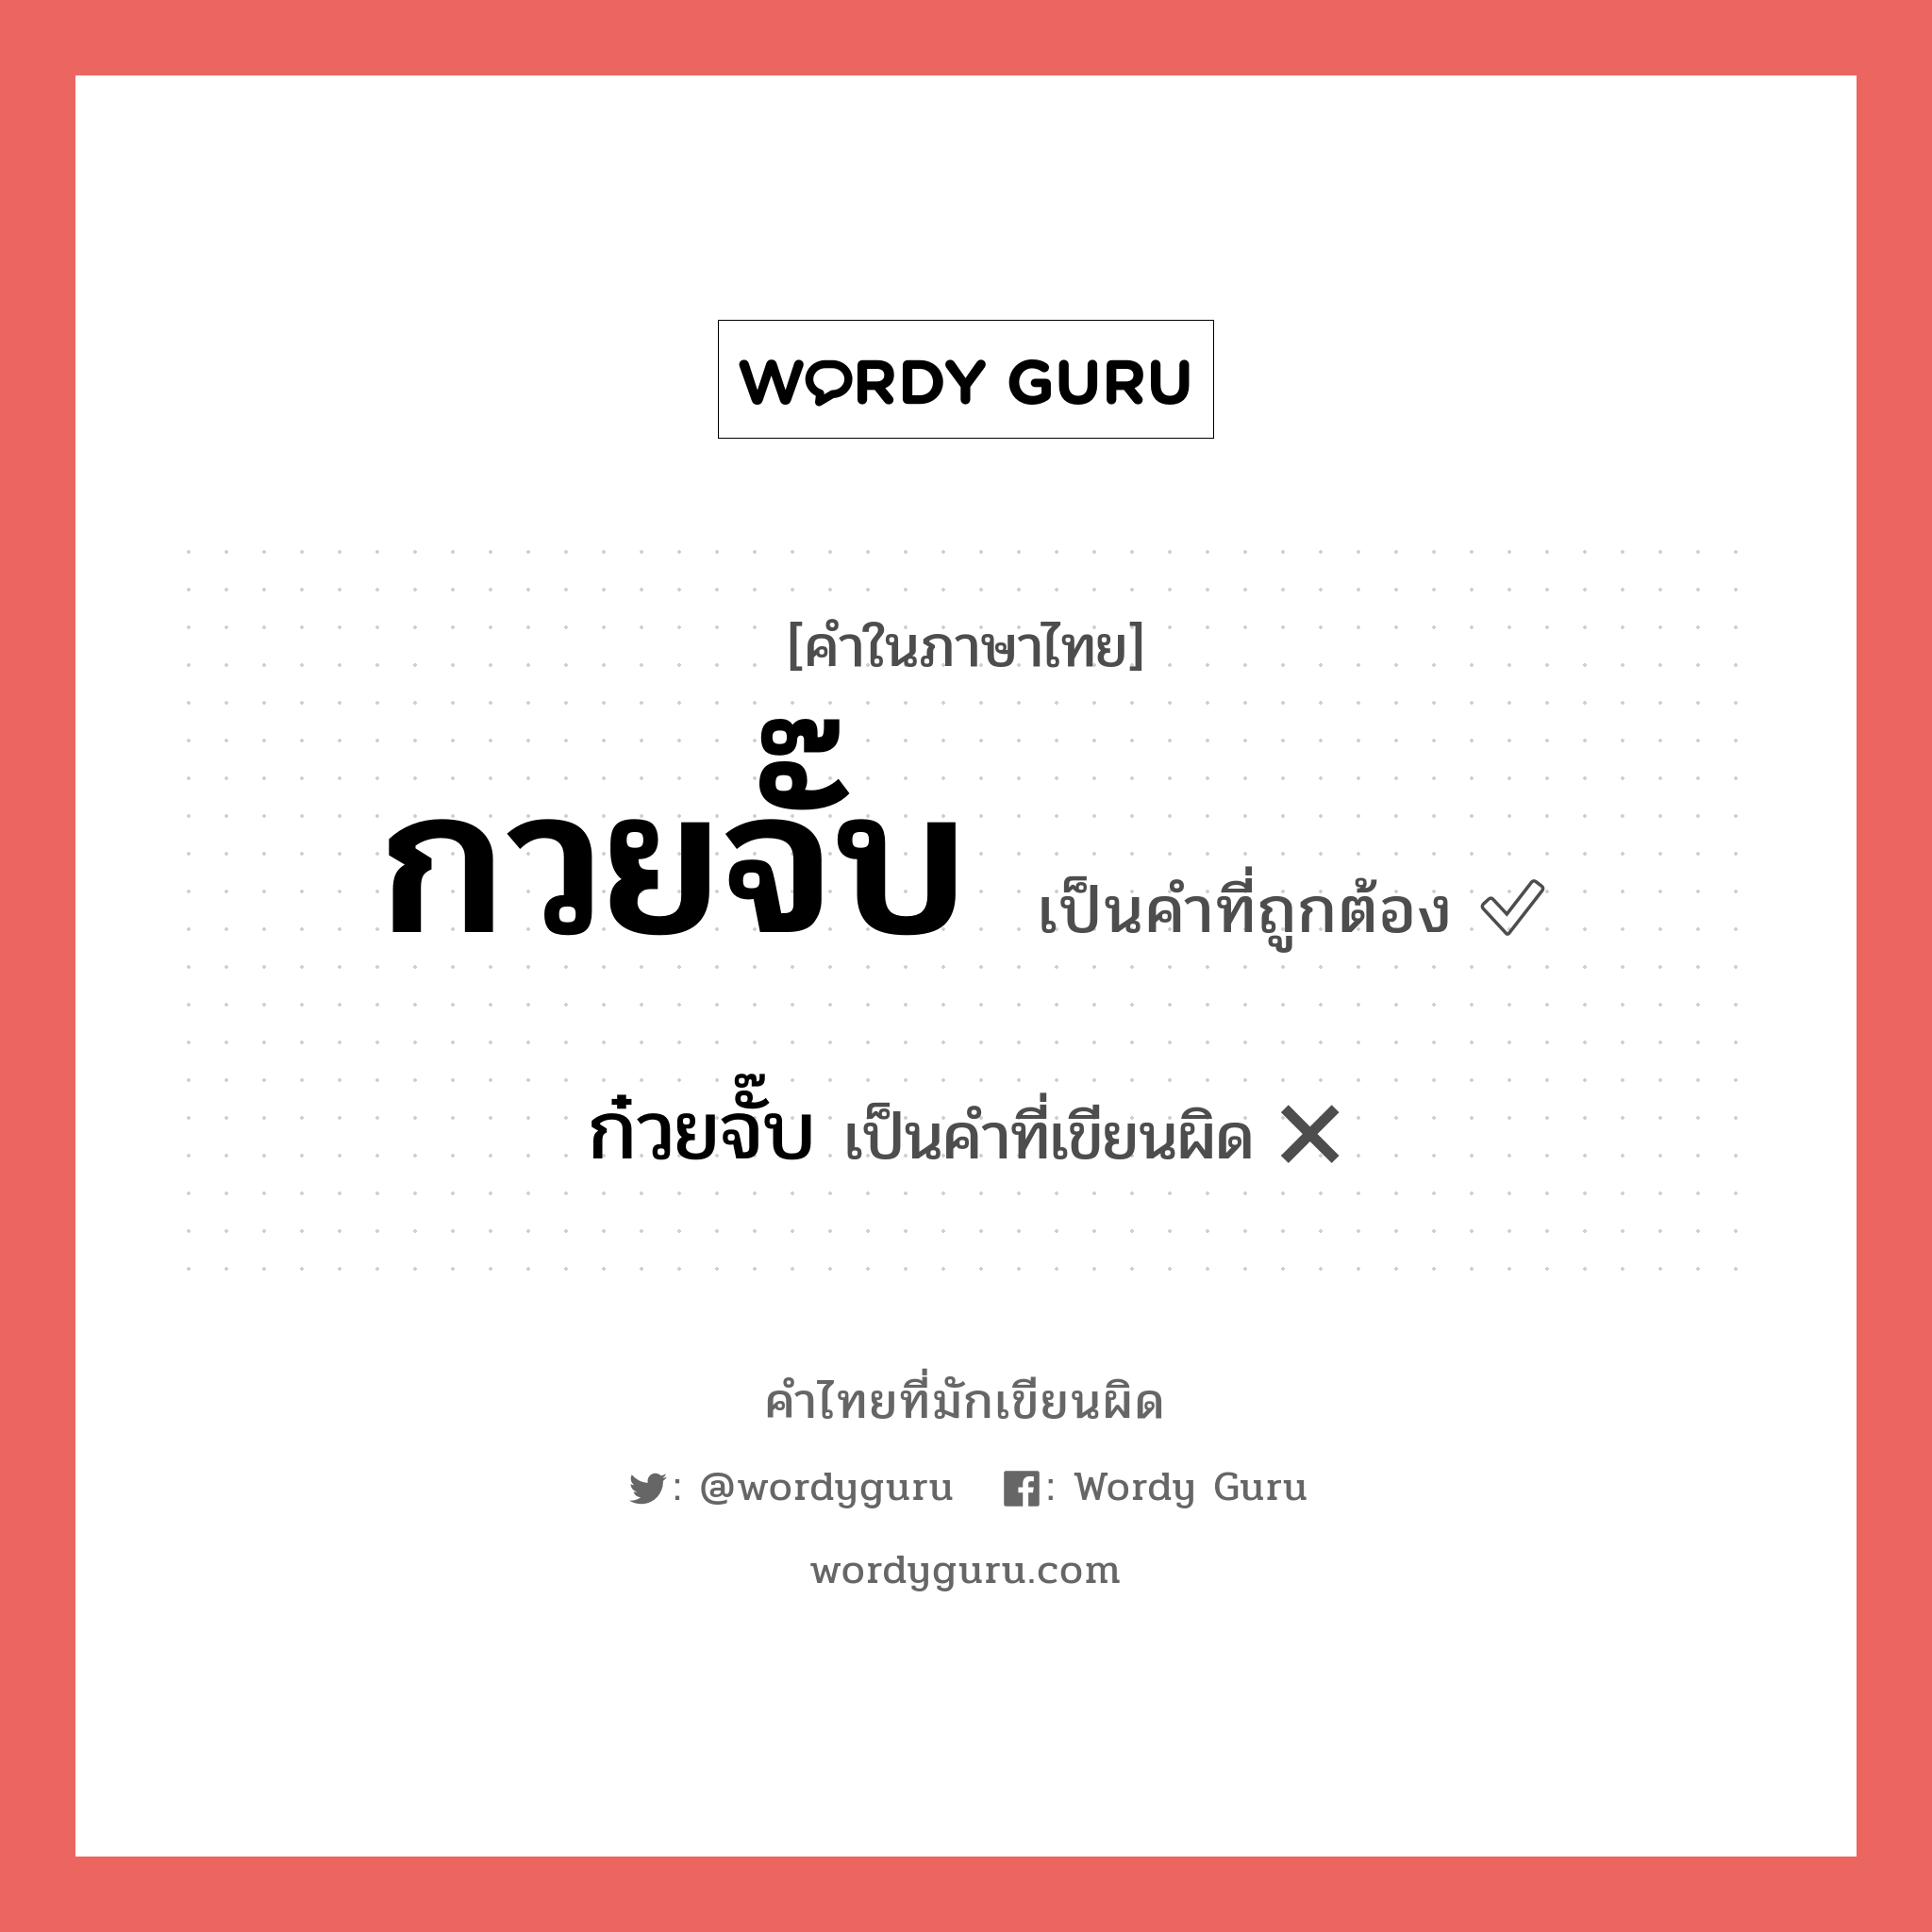 กวยจั๊บ หรือ ก๋วยจั๊บ เขียนยังไง? คำไหนเขียนถูก?, คำในภาษาไทยที่มักเขียนผิด กวยจั๊บ คำที่ผิด ❌ ก๋วยจั๊บ